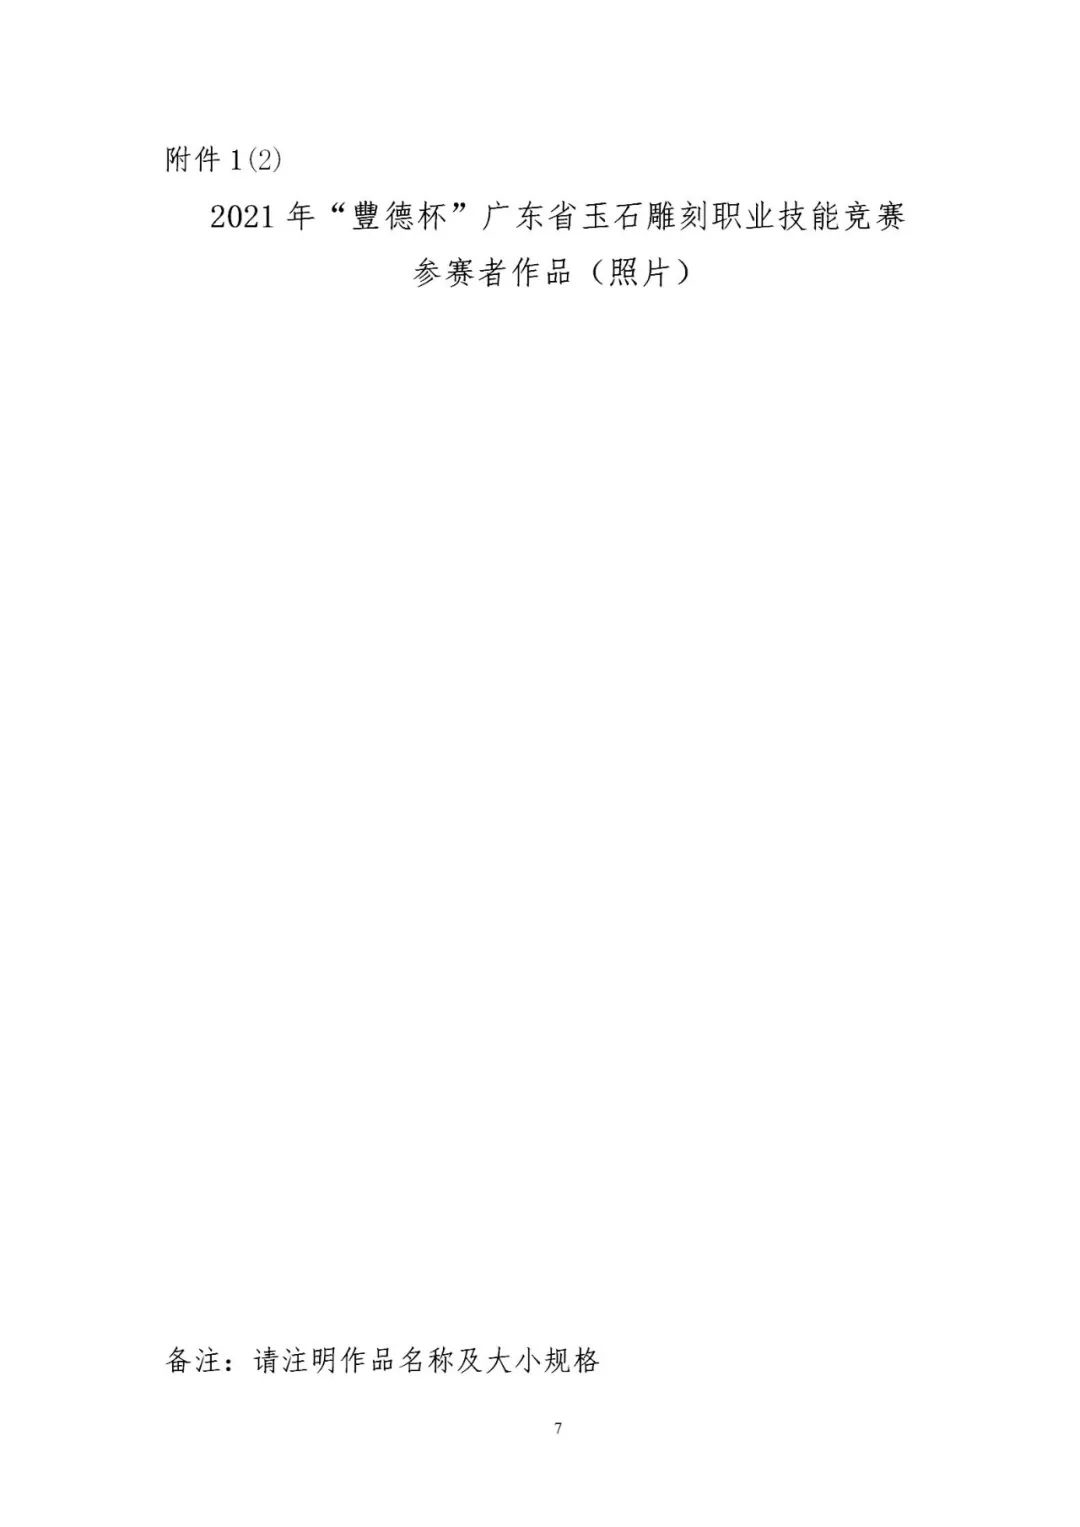 关于举办2021年“豐德杯”广东省玉石雕刻职业技能竞赛的通知 (7).jpg